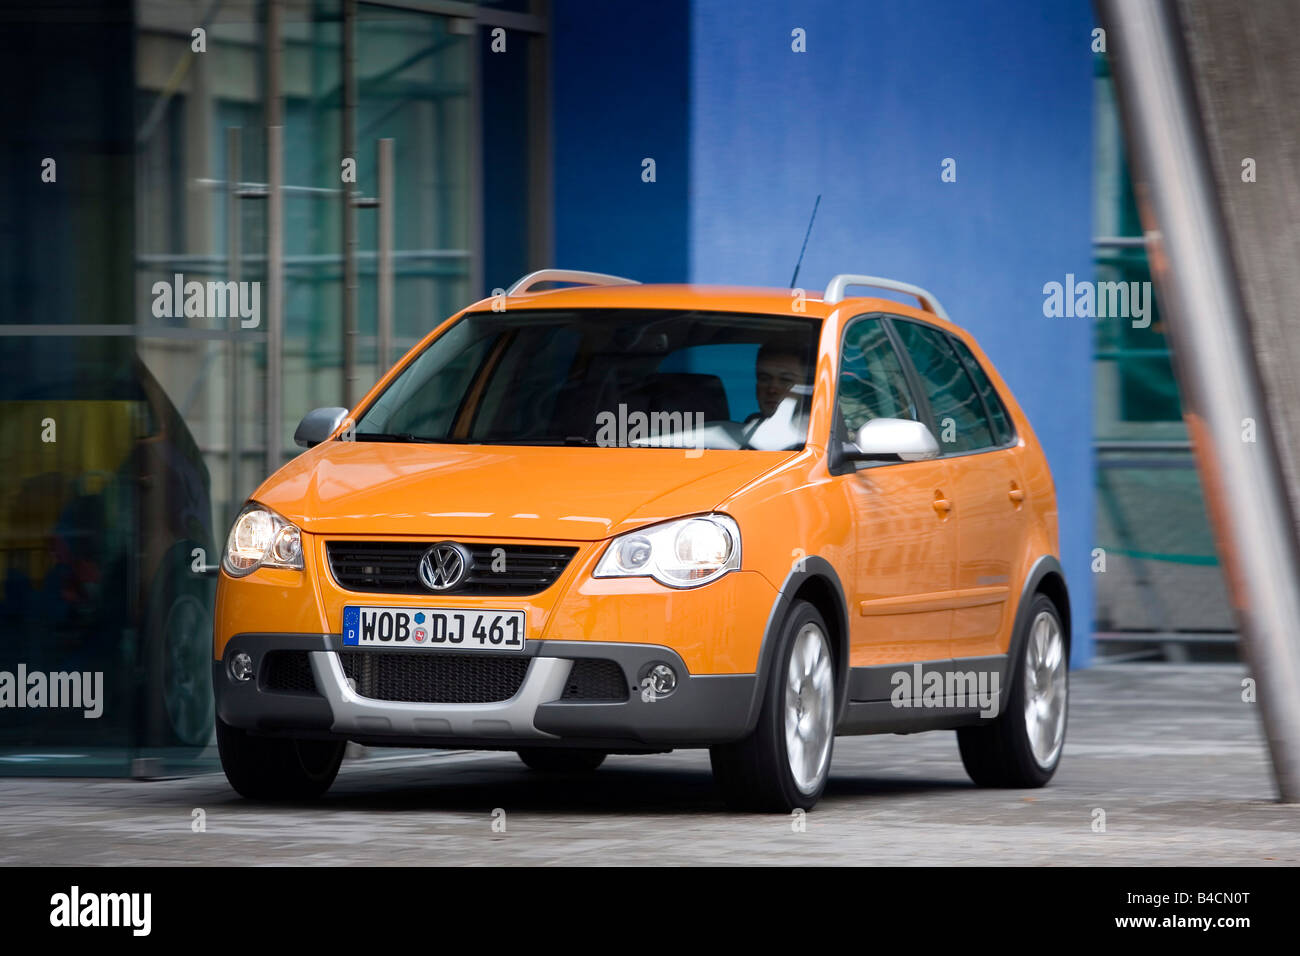 VW Volkswagen Polo trasversale 1.4 TDI, modello anno 2006-, arancione , guida, diagonale dalla parte anteriore, vista frontale, Città Foto Stock